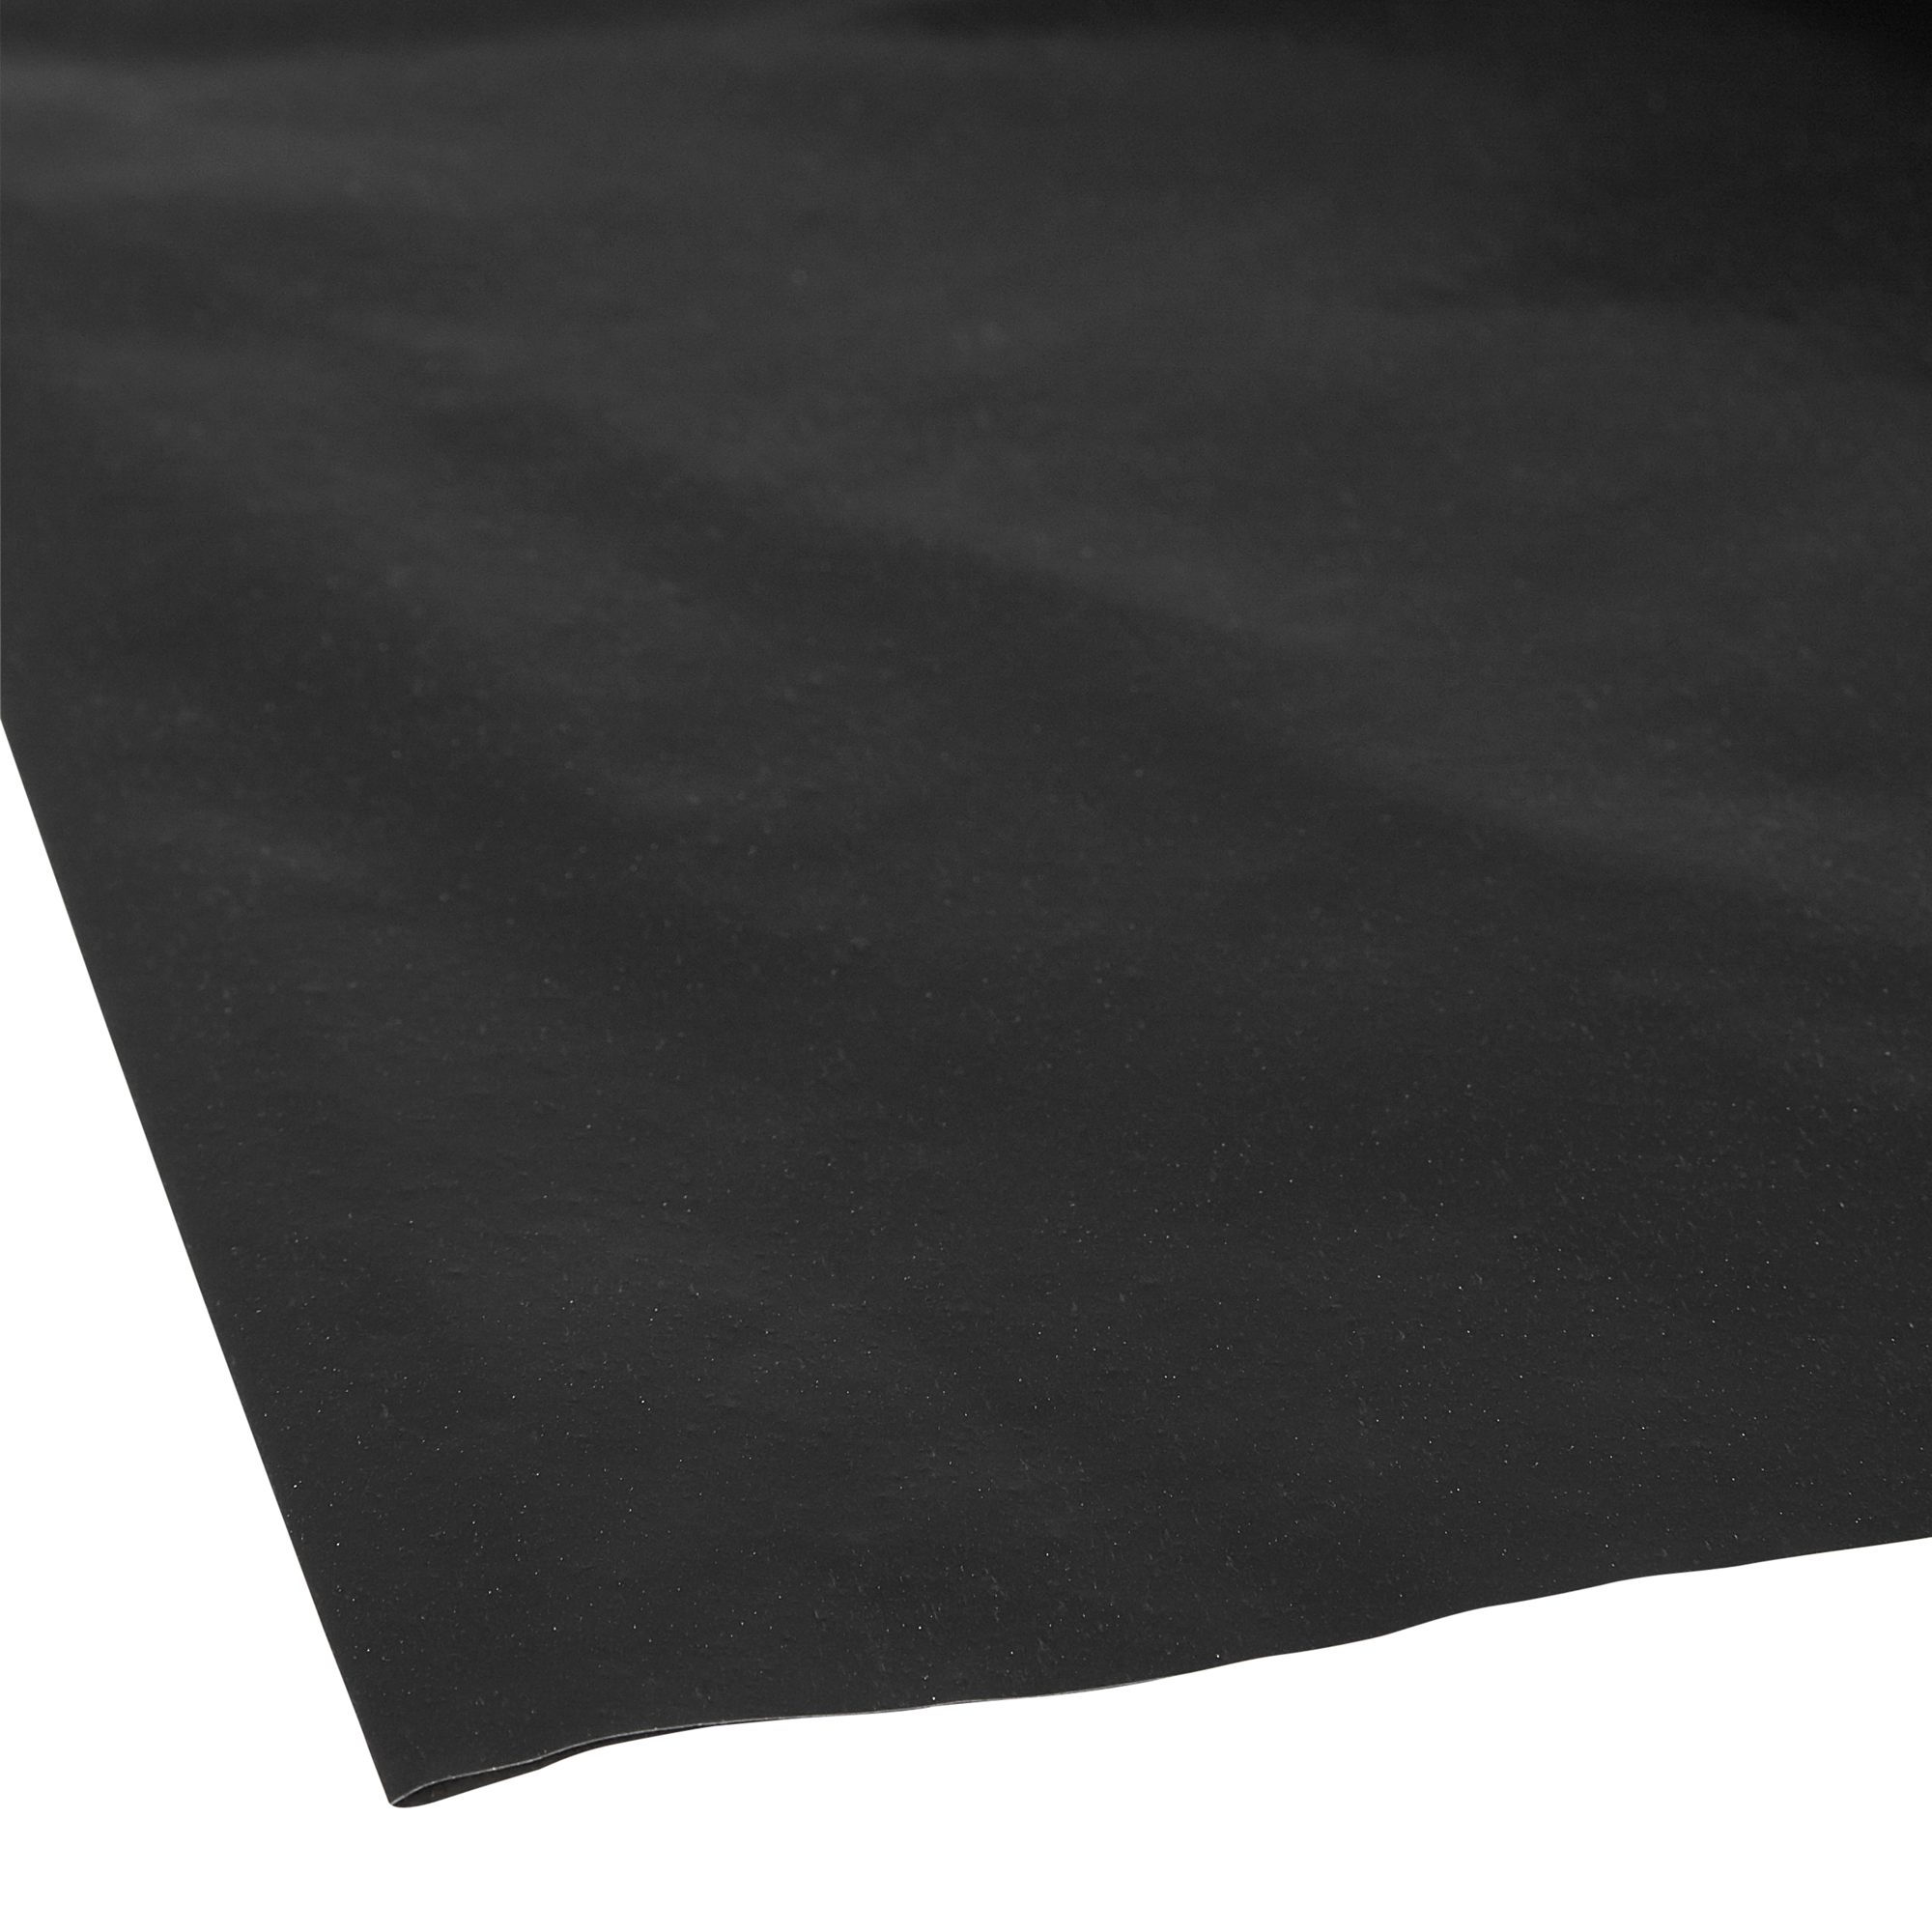 Abdeckplane LDPE gefaltet schwarz 500 x 400 cm + product picture